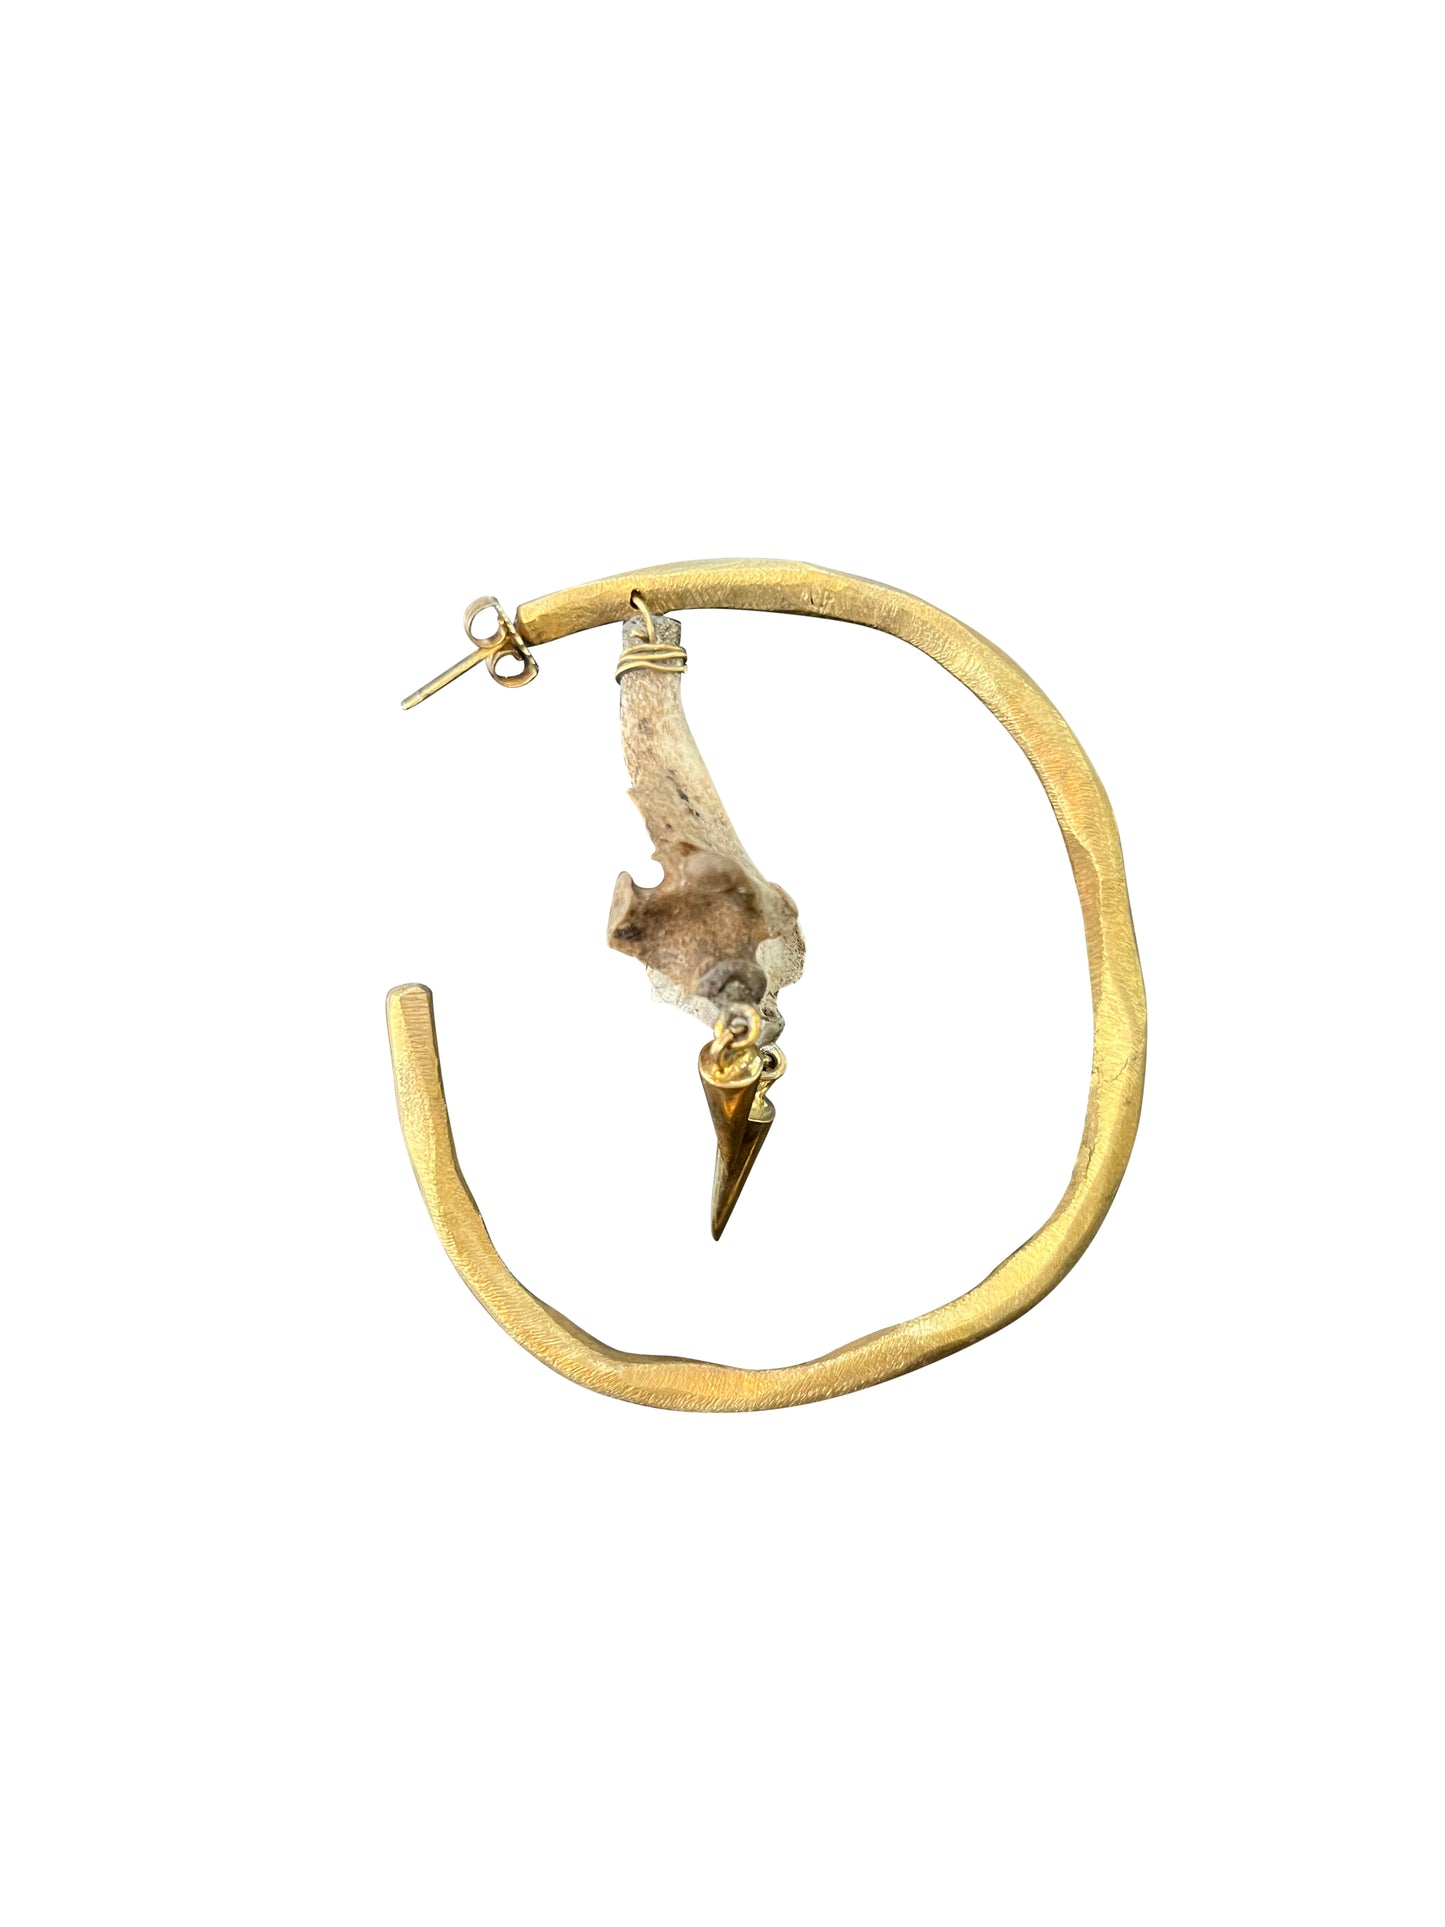 Brass Hoop Earring with Bone